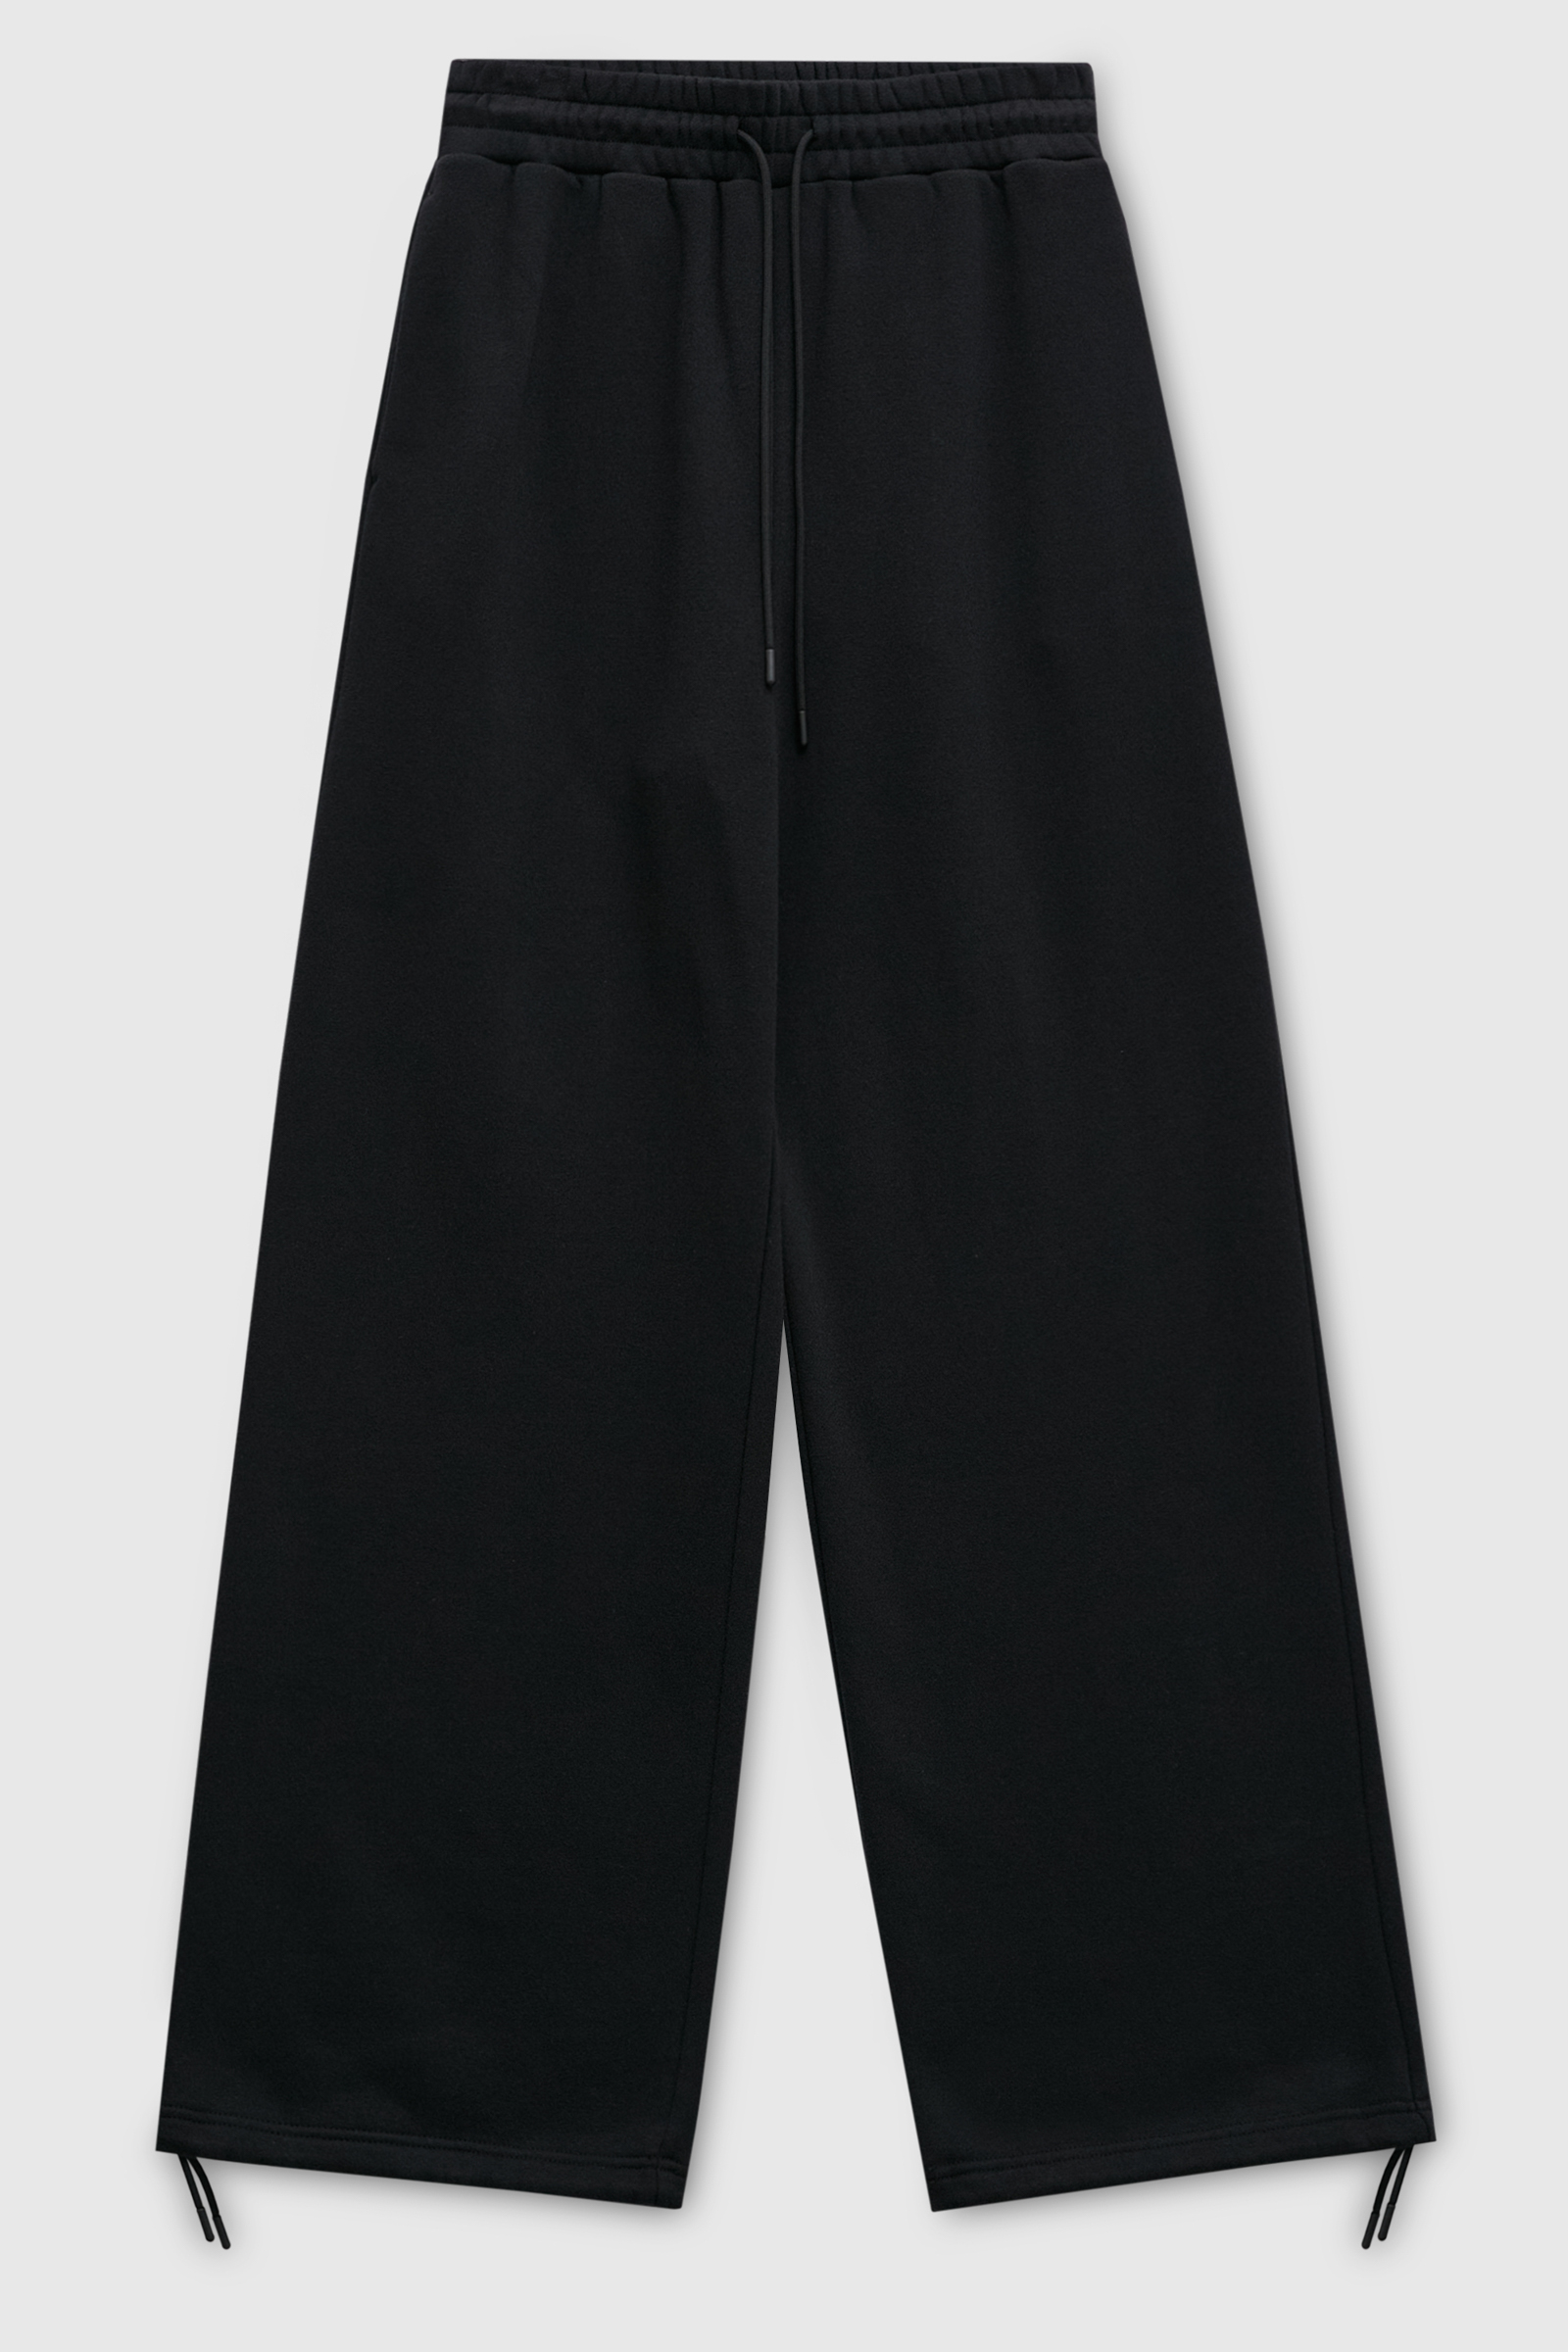 Спортивные брюки женские Finn Flare FAD110161 черные L